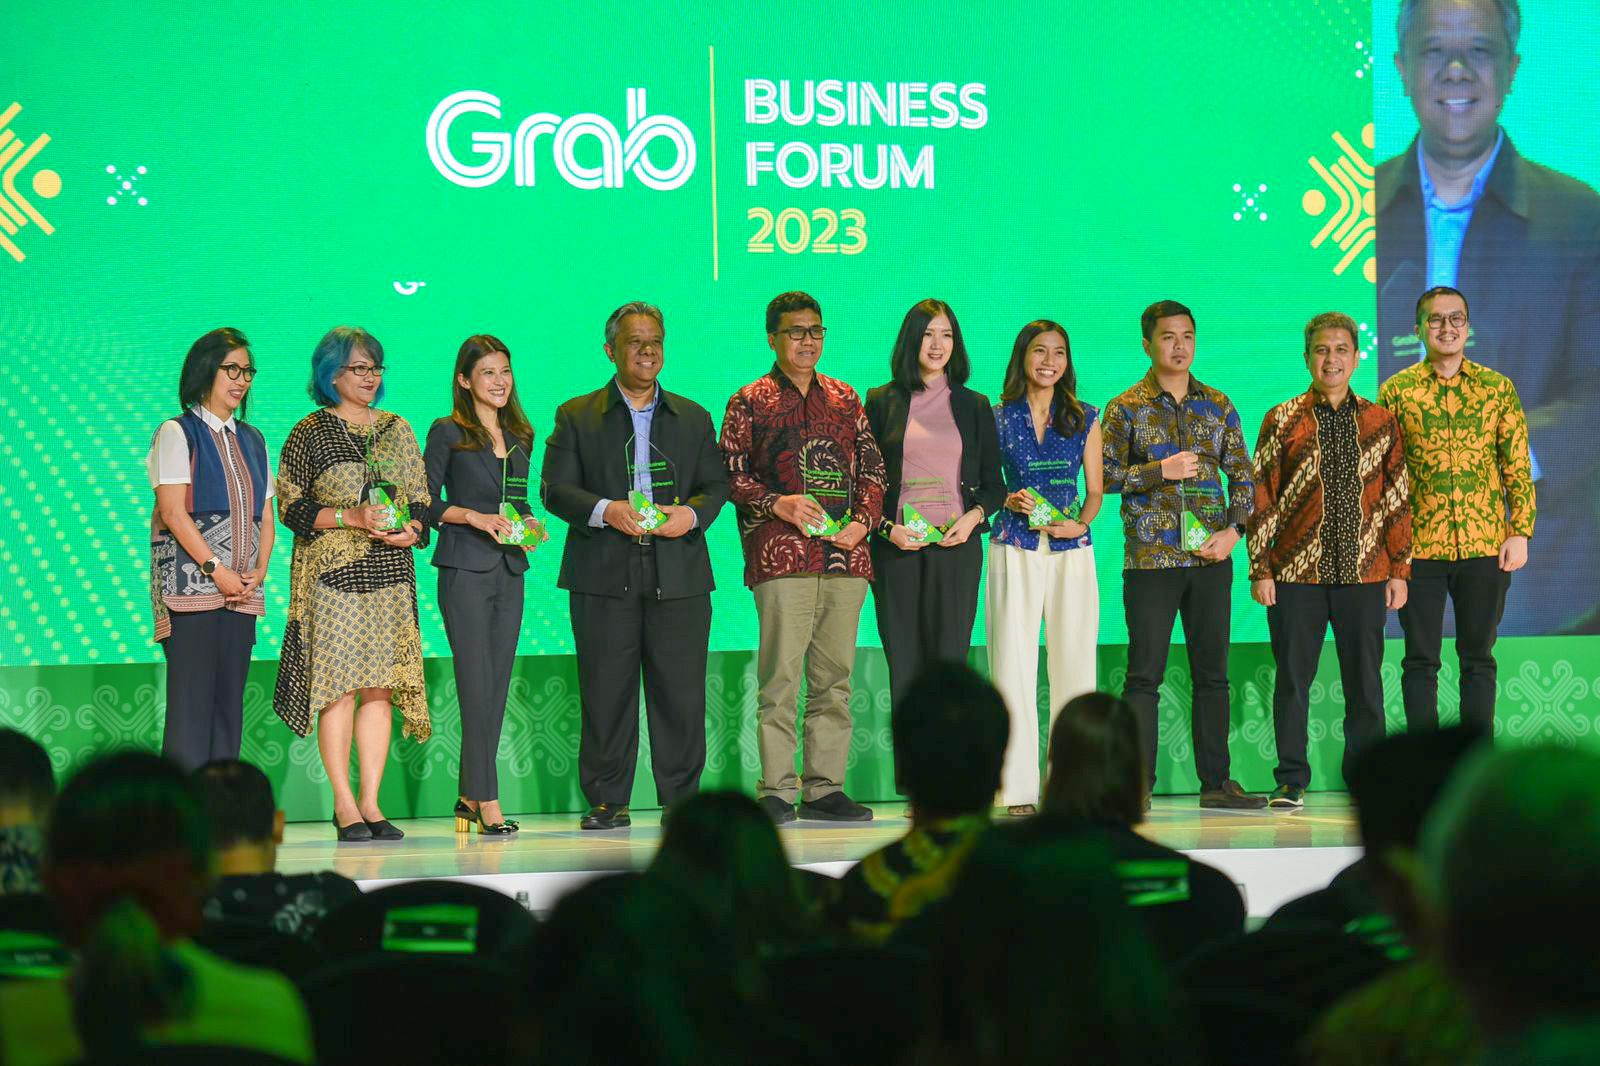 Biteship Menerima Penghargaan "Layanan Pengiriman Konsumen Terbaik" dari Grab pada Forum Bisnis Grab 2023